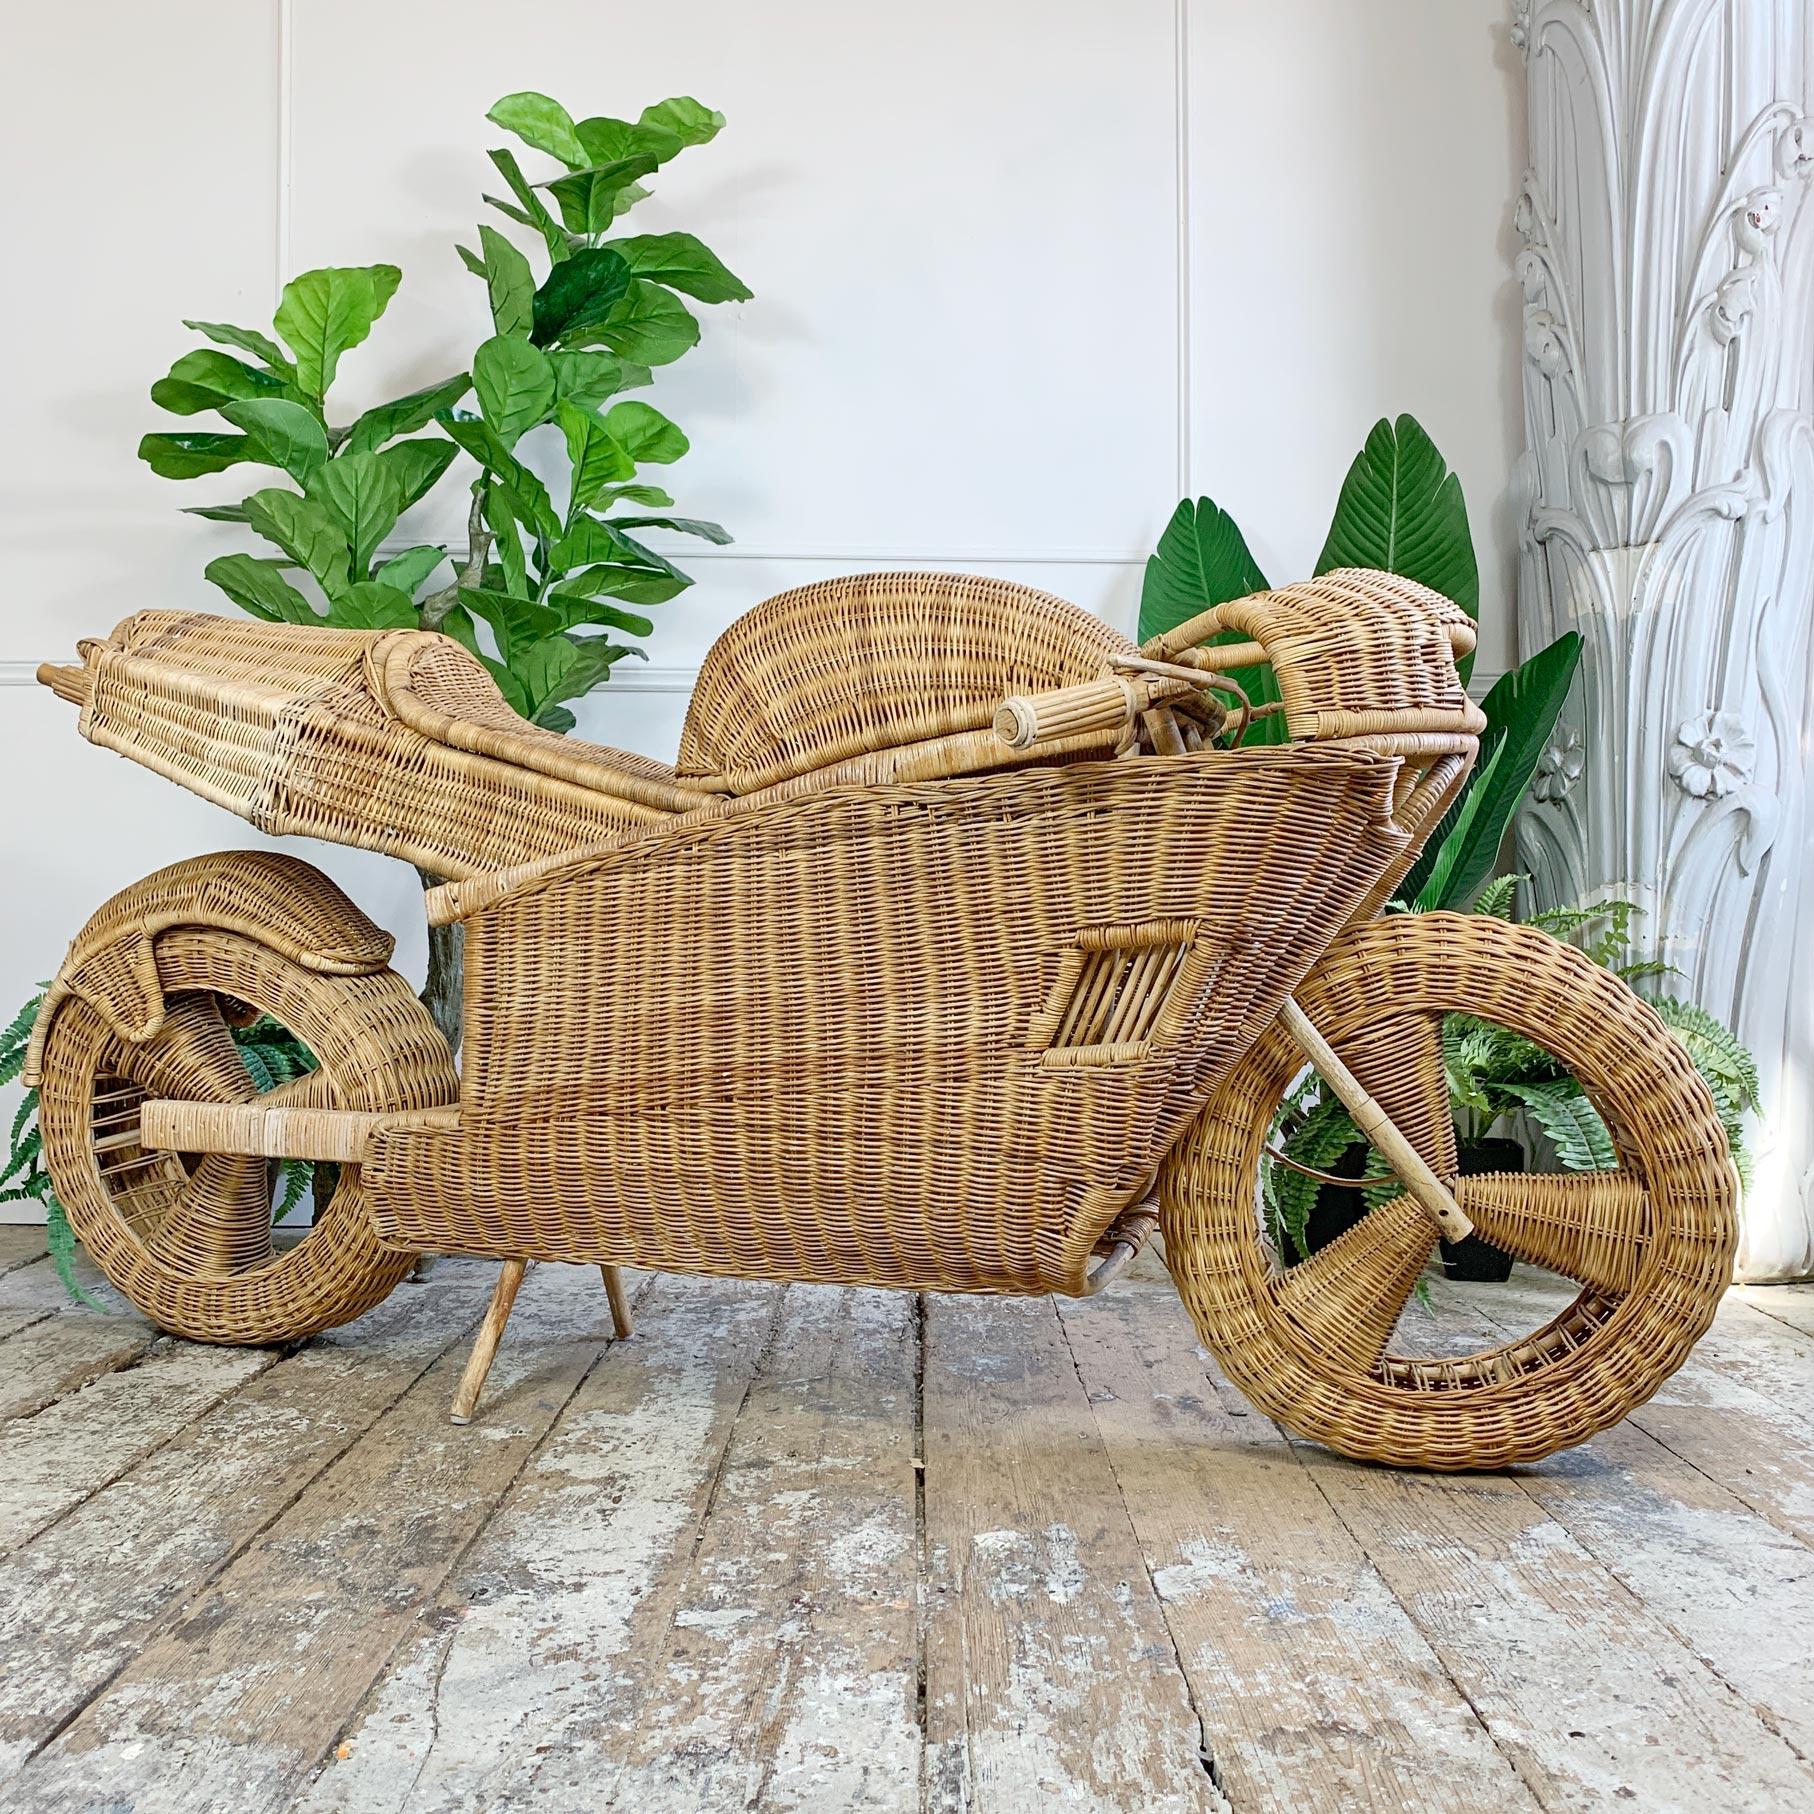 Die hervorragende Skulptur in Form eines Rennmotorrads aus Korbgeflecht-Rattan und Bambus ist fantastisch, bis hin zum inneren Strahler im hinteren Bereich. 

Diese seltene Skulptur stammt aus den 1980er Jahren und ist in sehr gutem Vintage-Zustand.